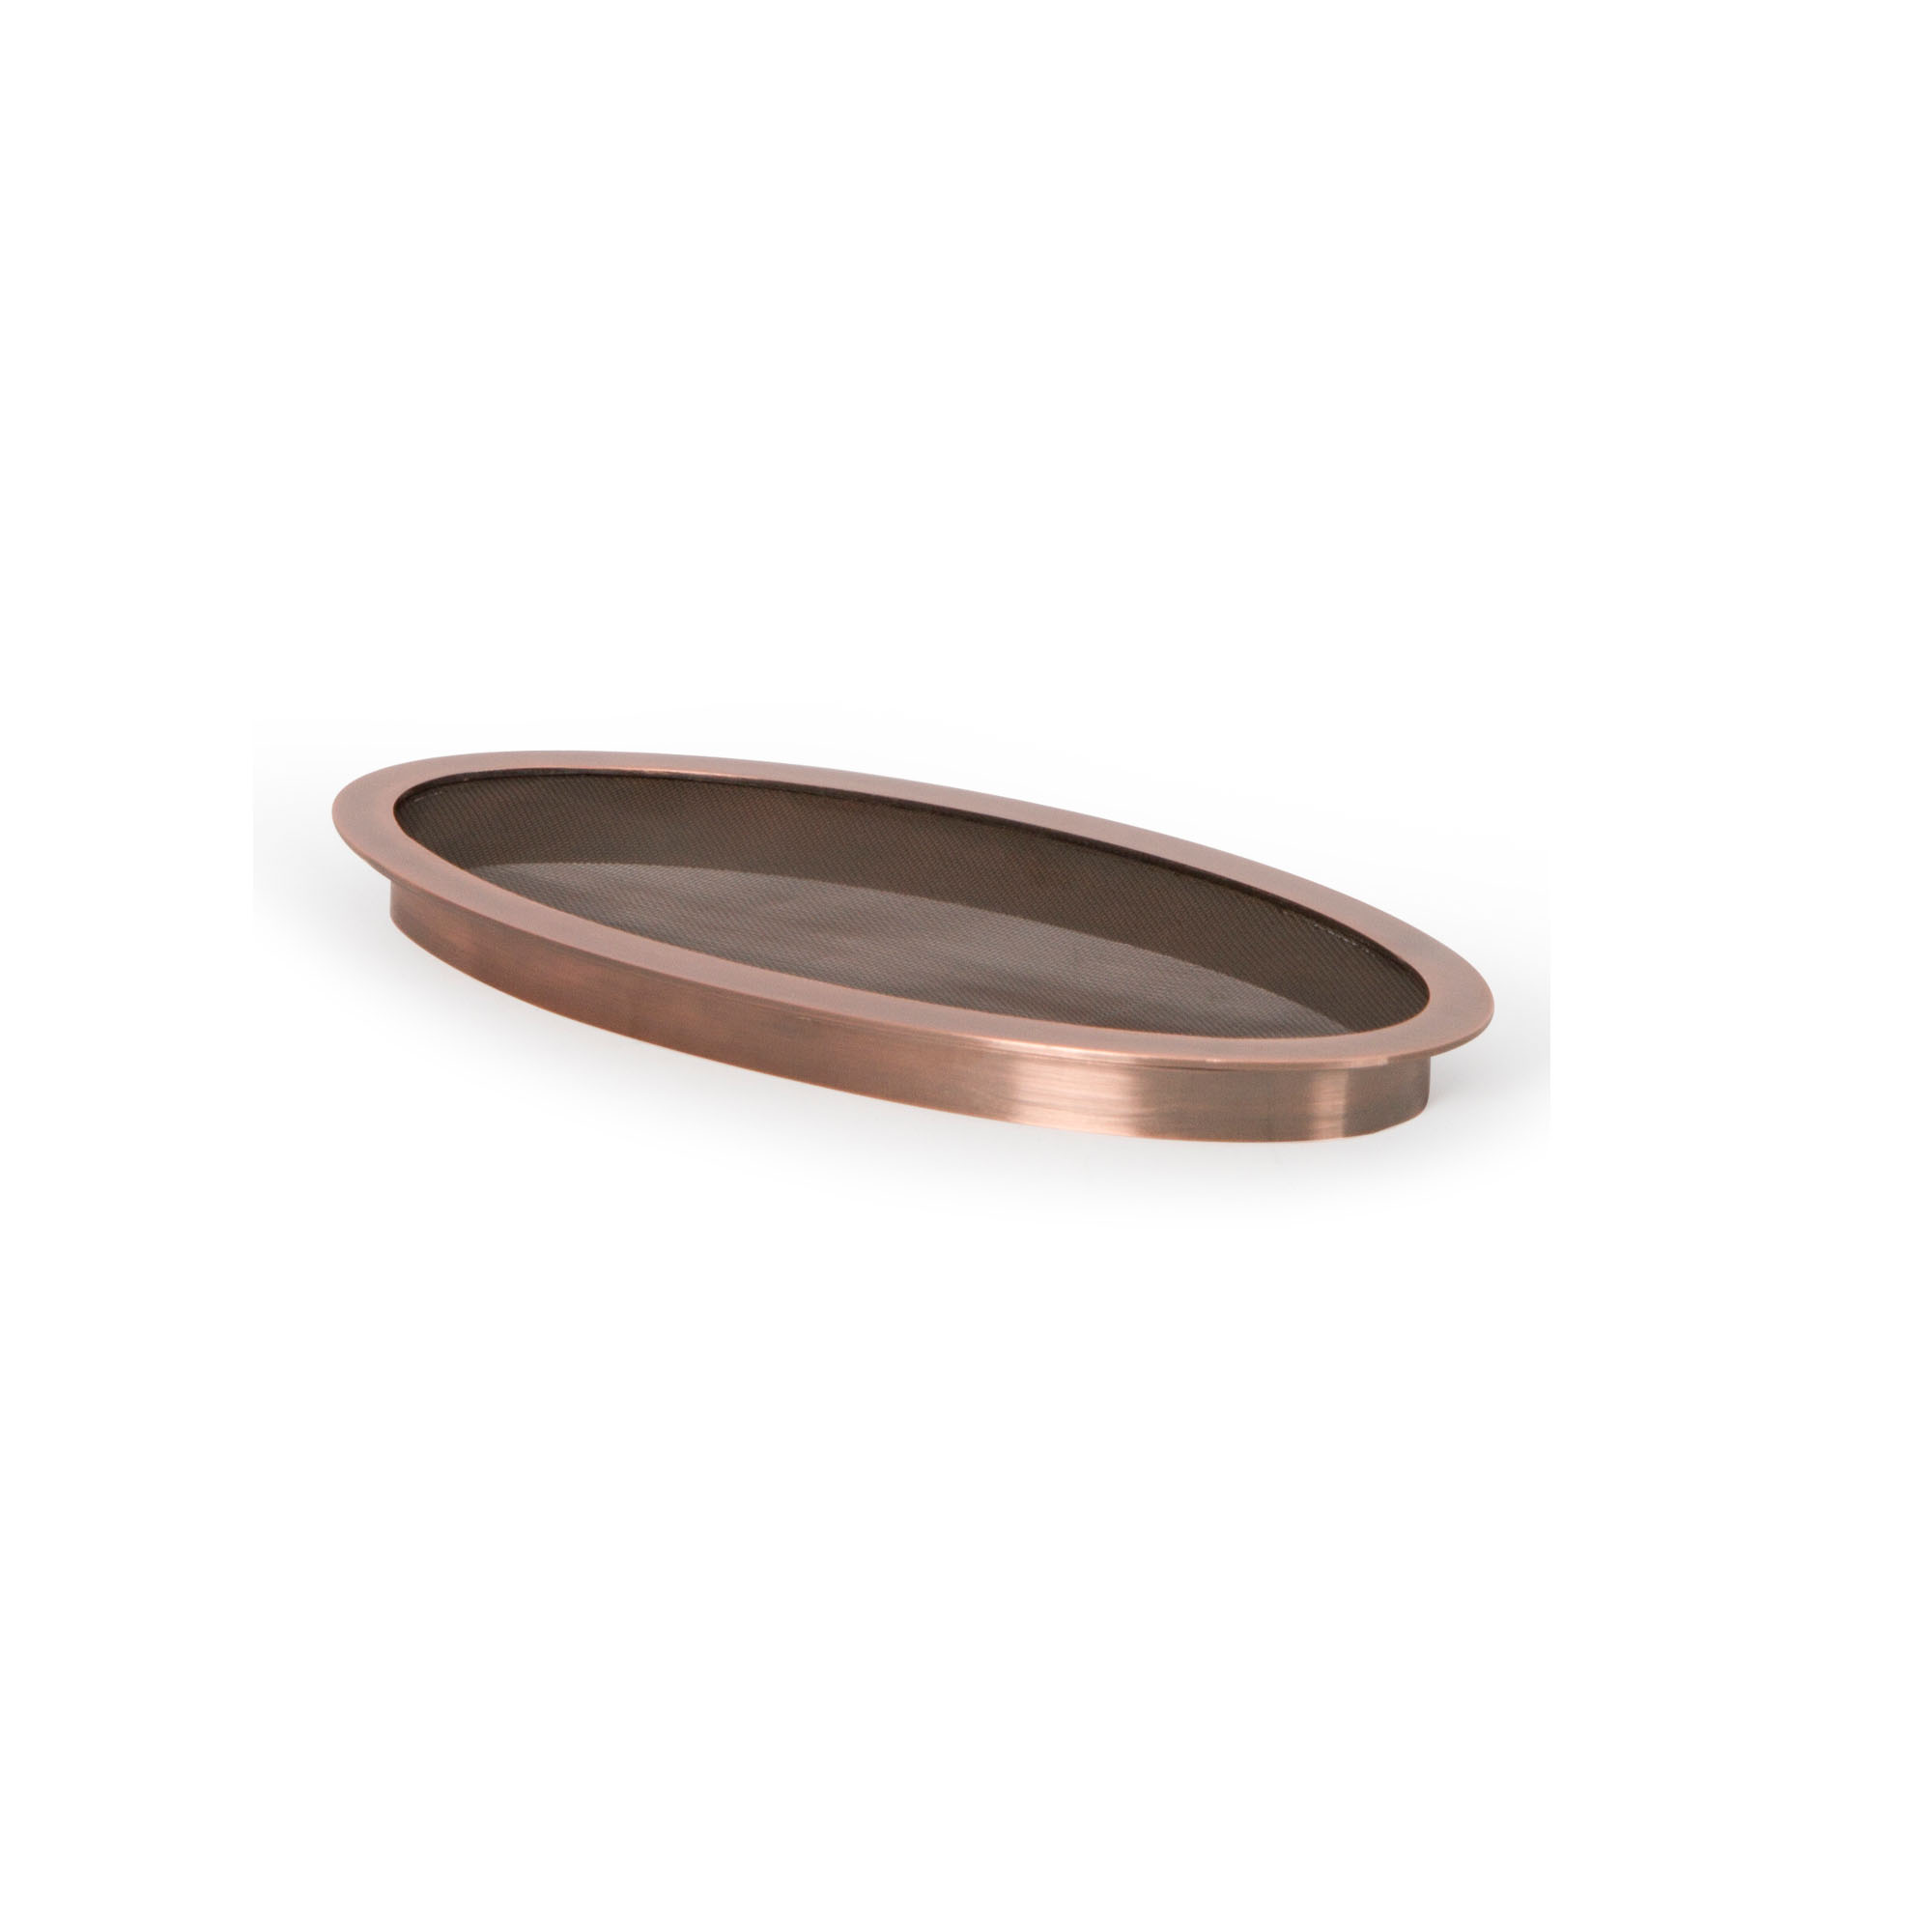 12" Copper Finish Splash Ring